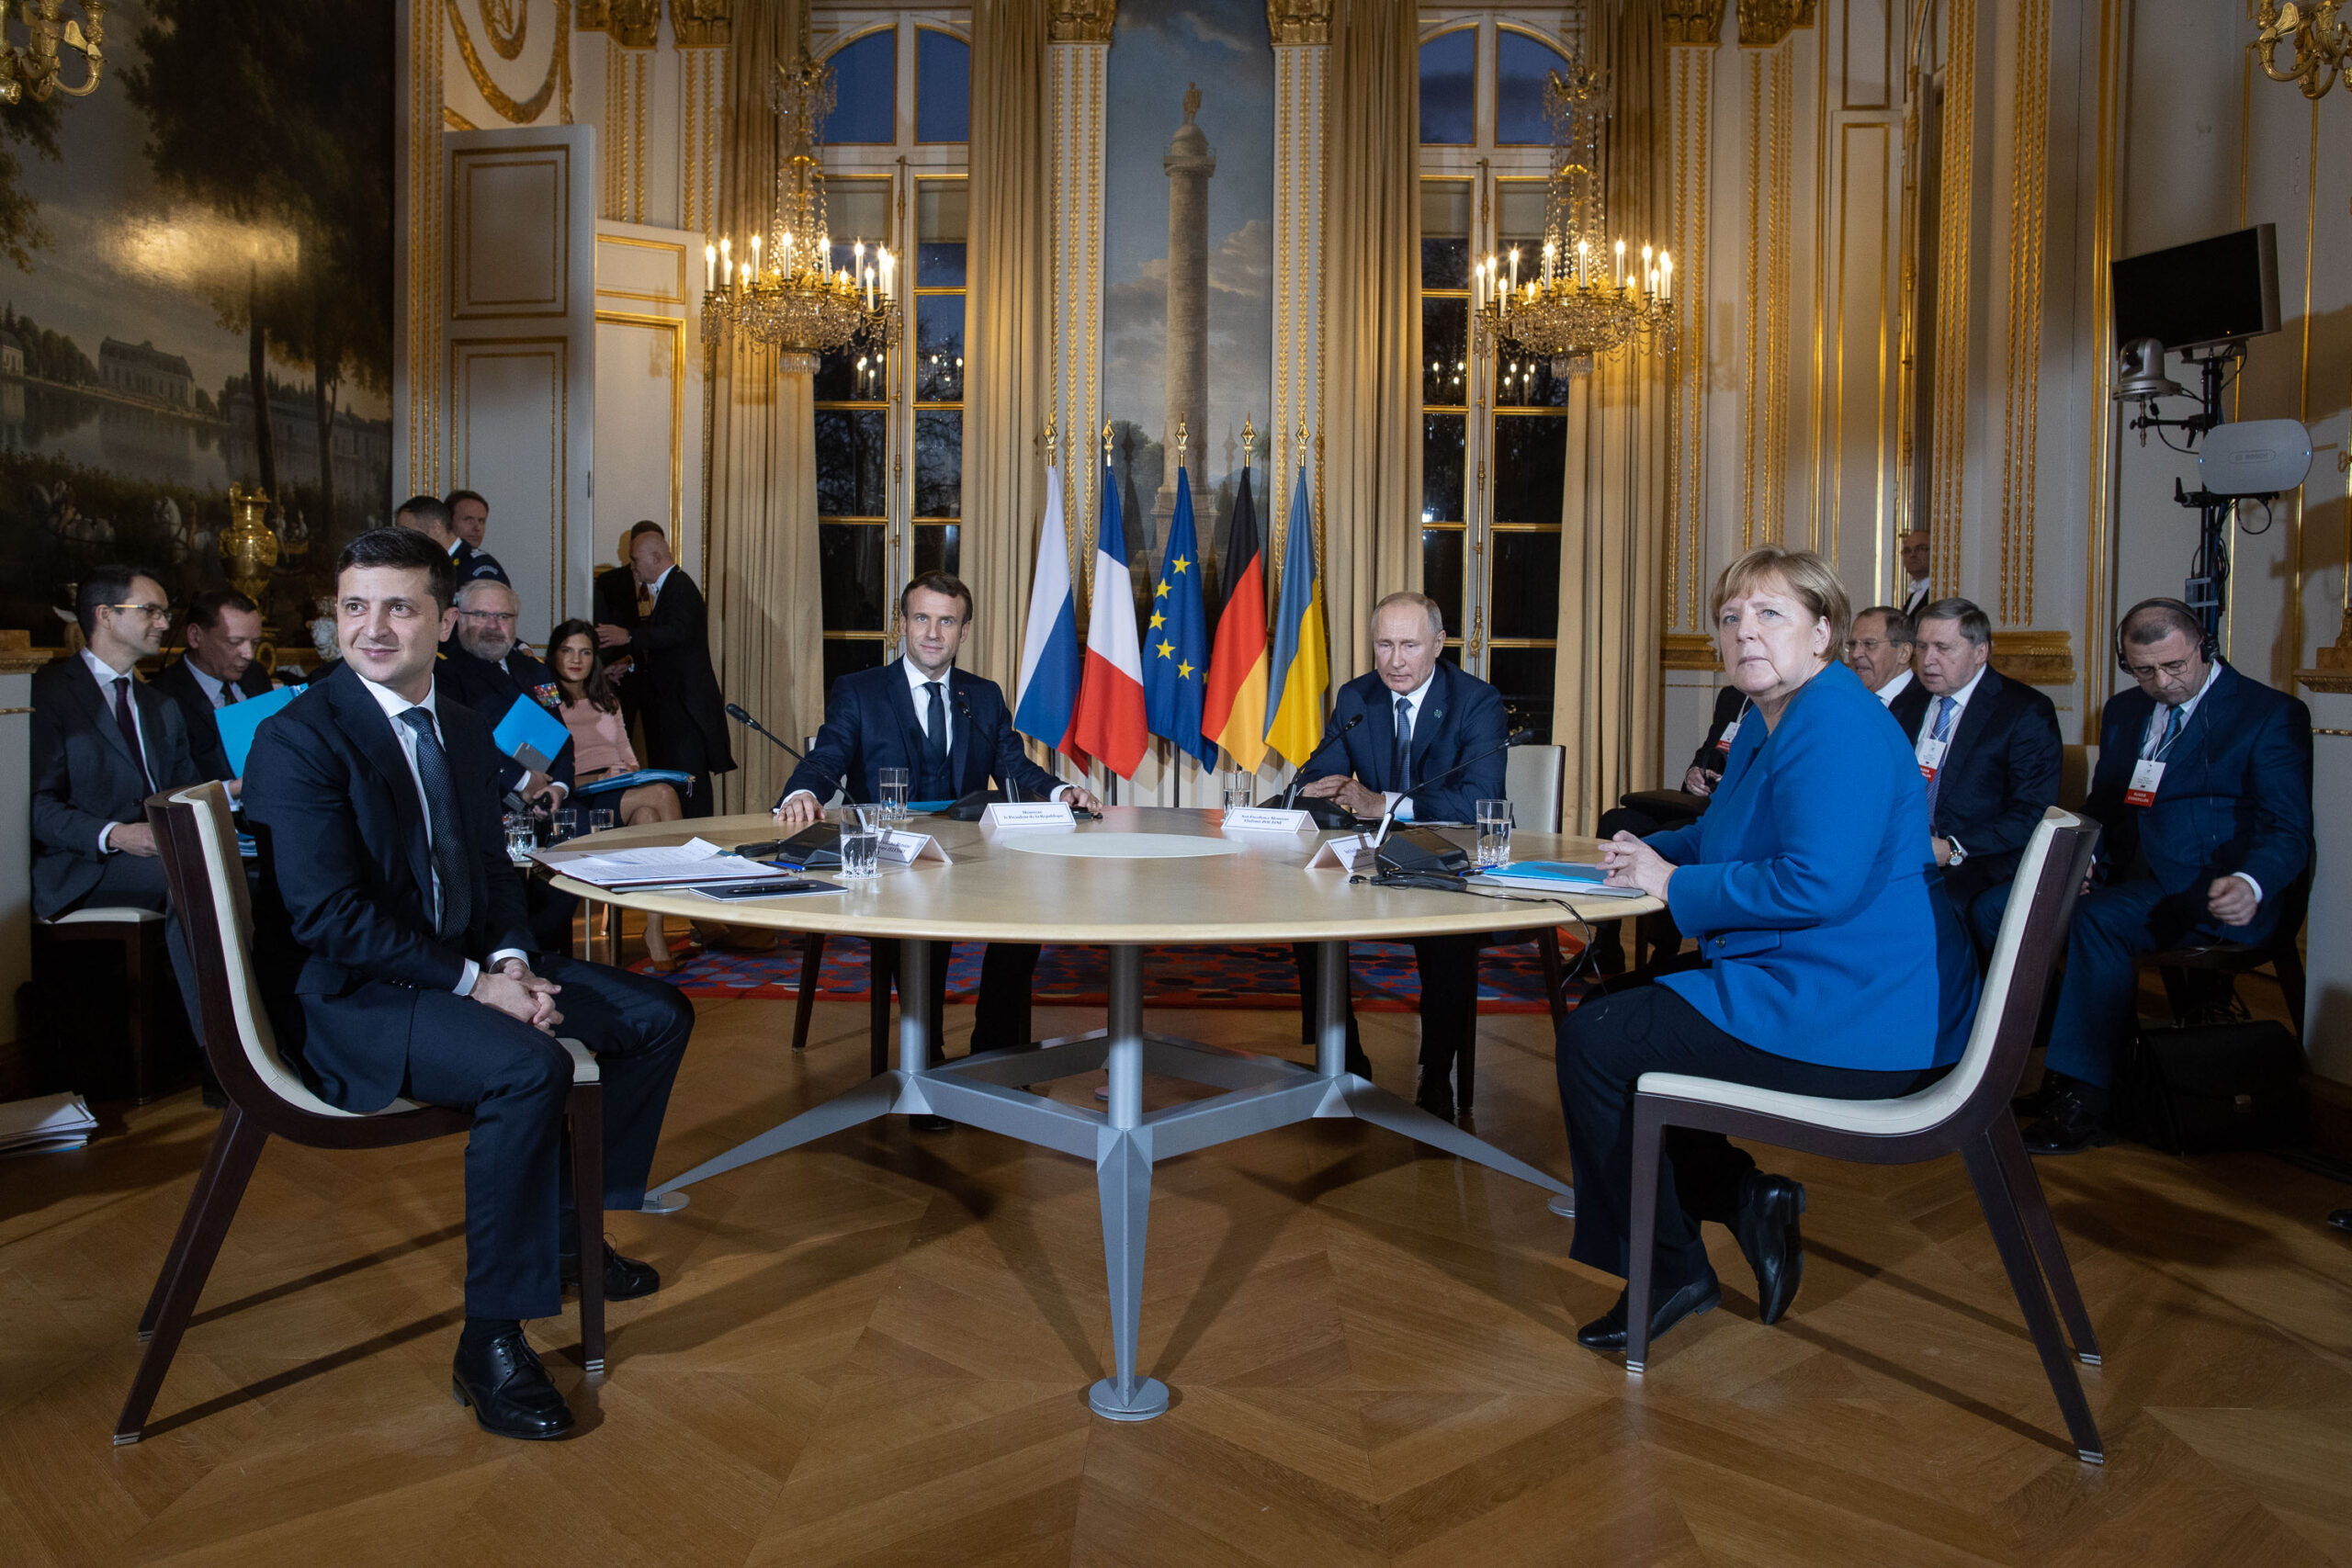 Зеленский опубликовал совместное фото с Путиным, Макроном и Меркель